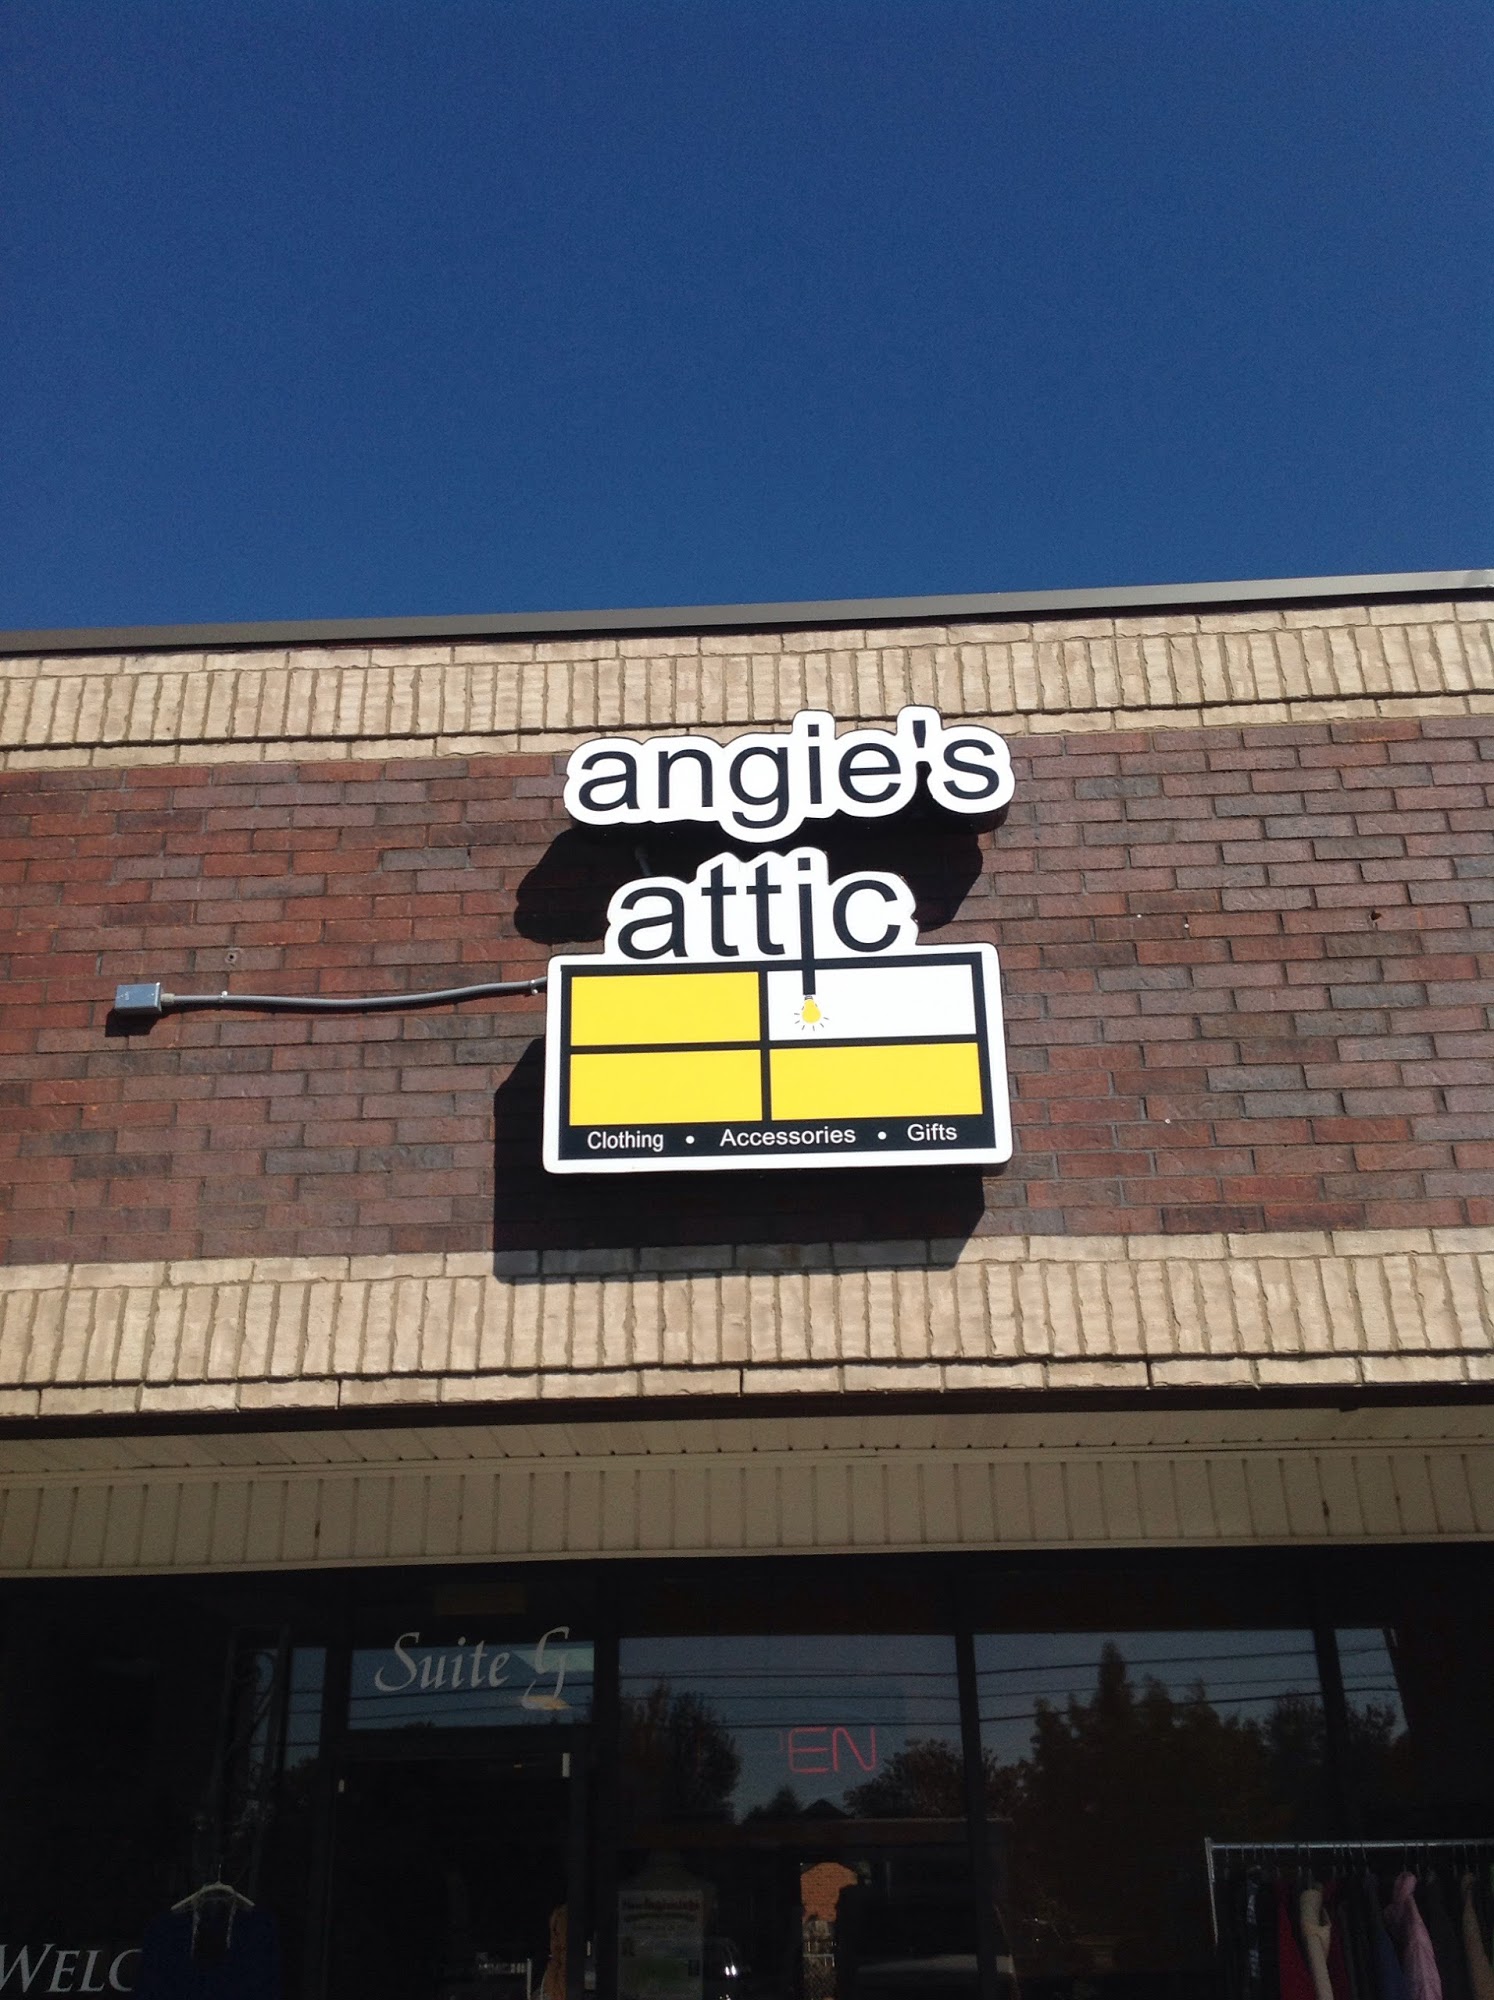 Angie's Attic